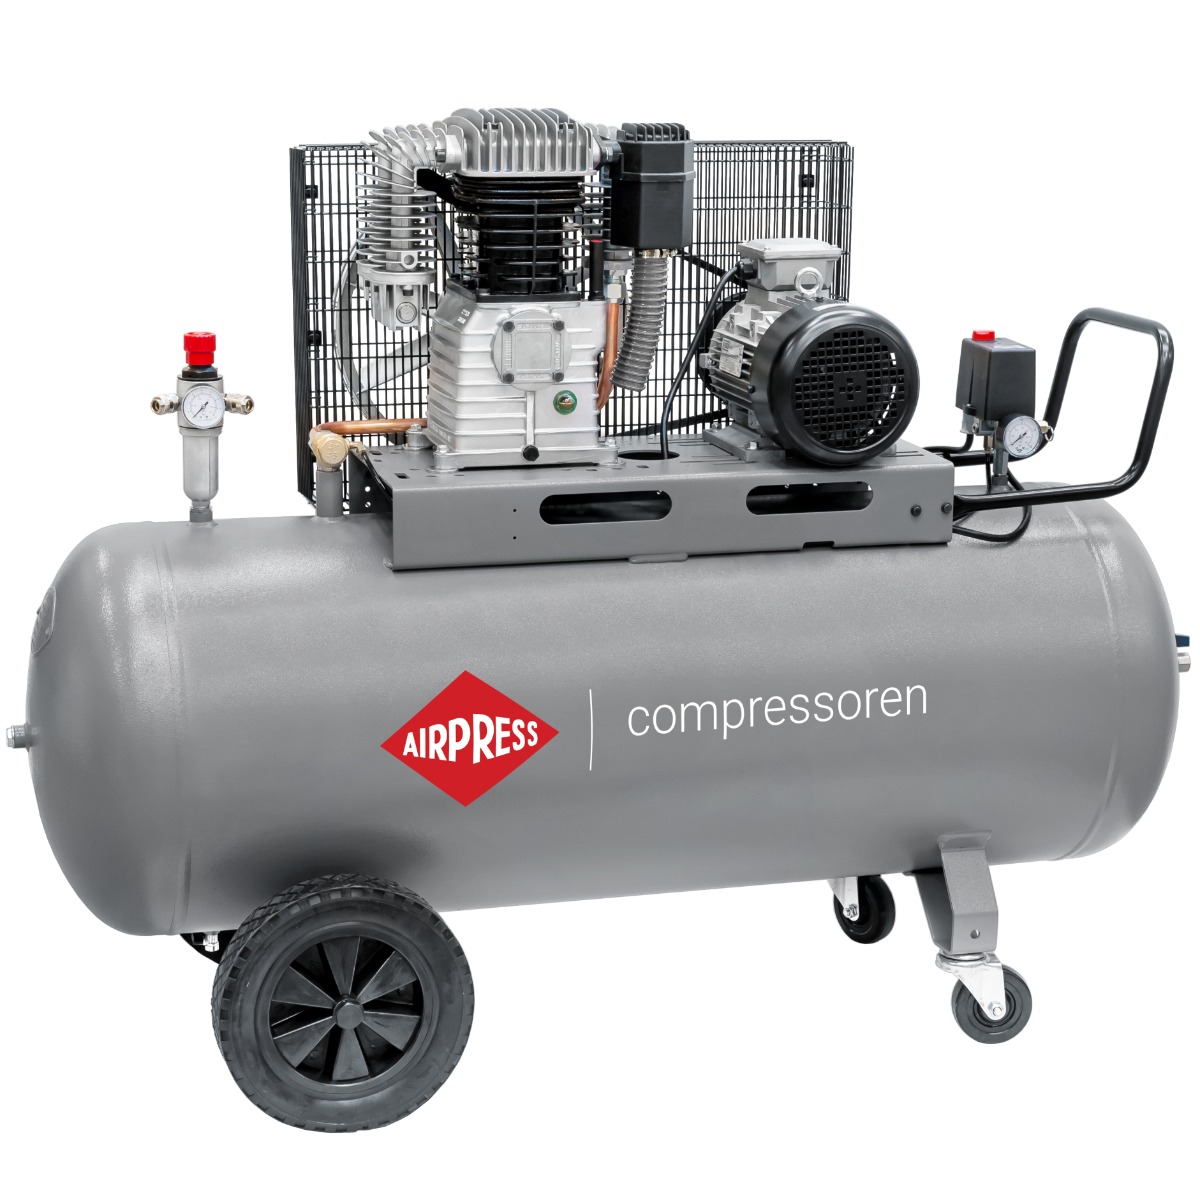 HK 700-300 Pro compressor